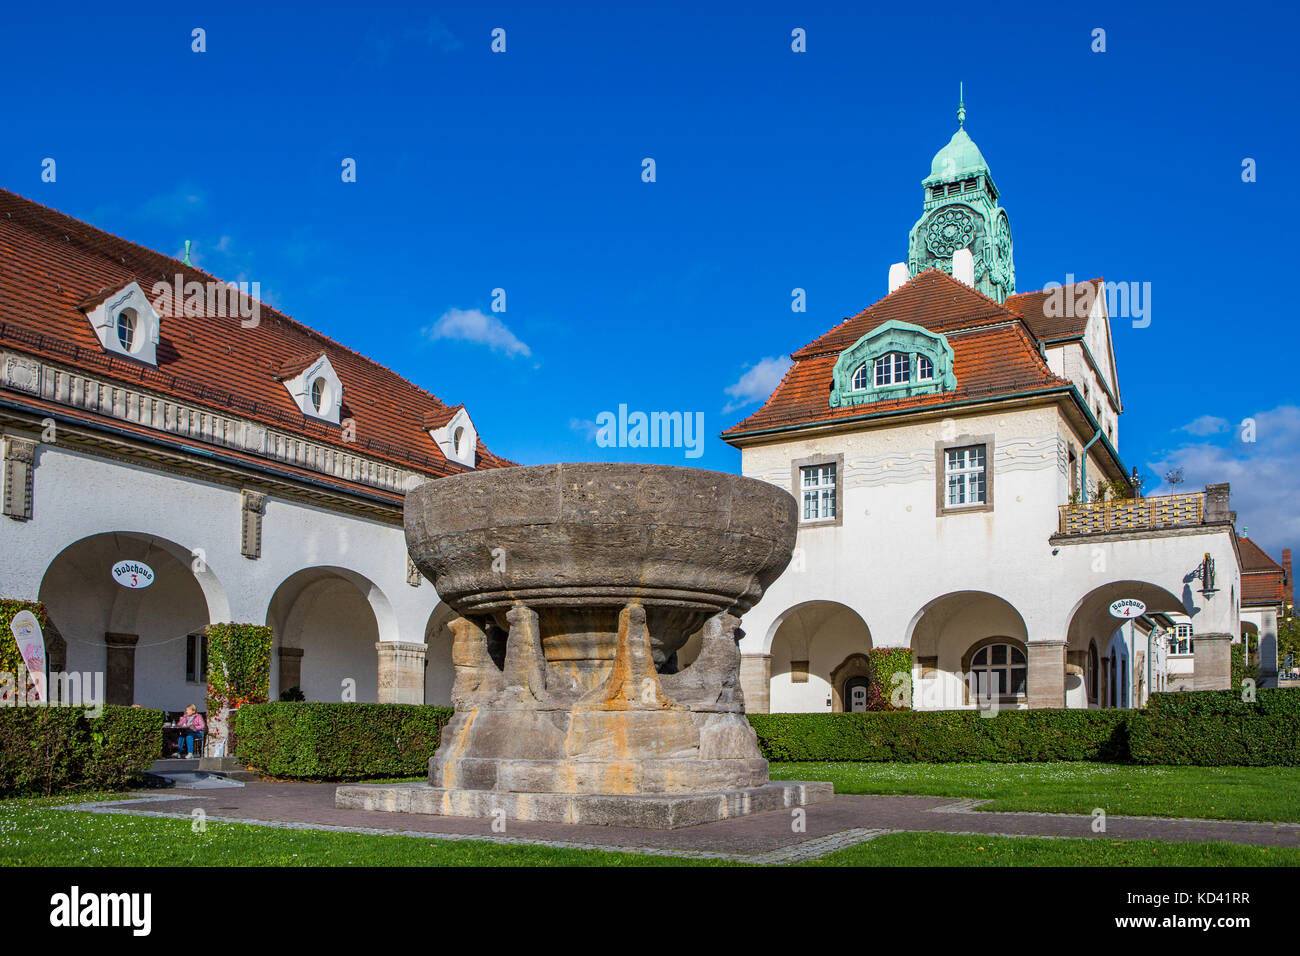 Sprudelhof Bad Nauheim, Germania. Qui cortile con bagni e fontana. Lo Sprudelhof è un ex centro benessere fondato nell'era dell'Art Nouveau. Foto Stock